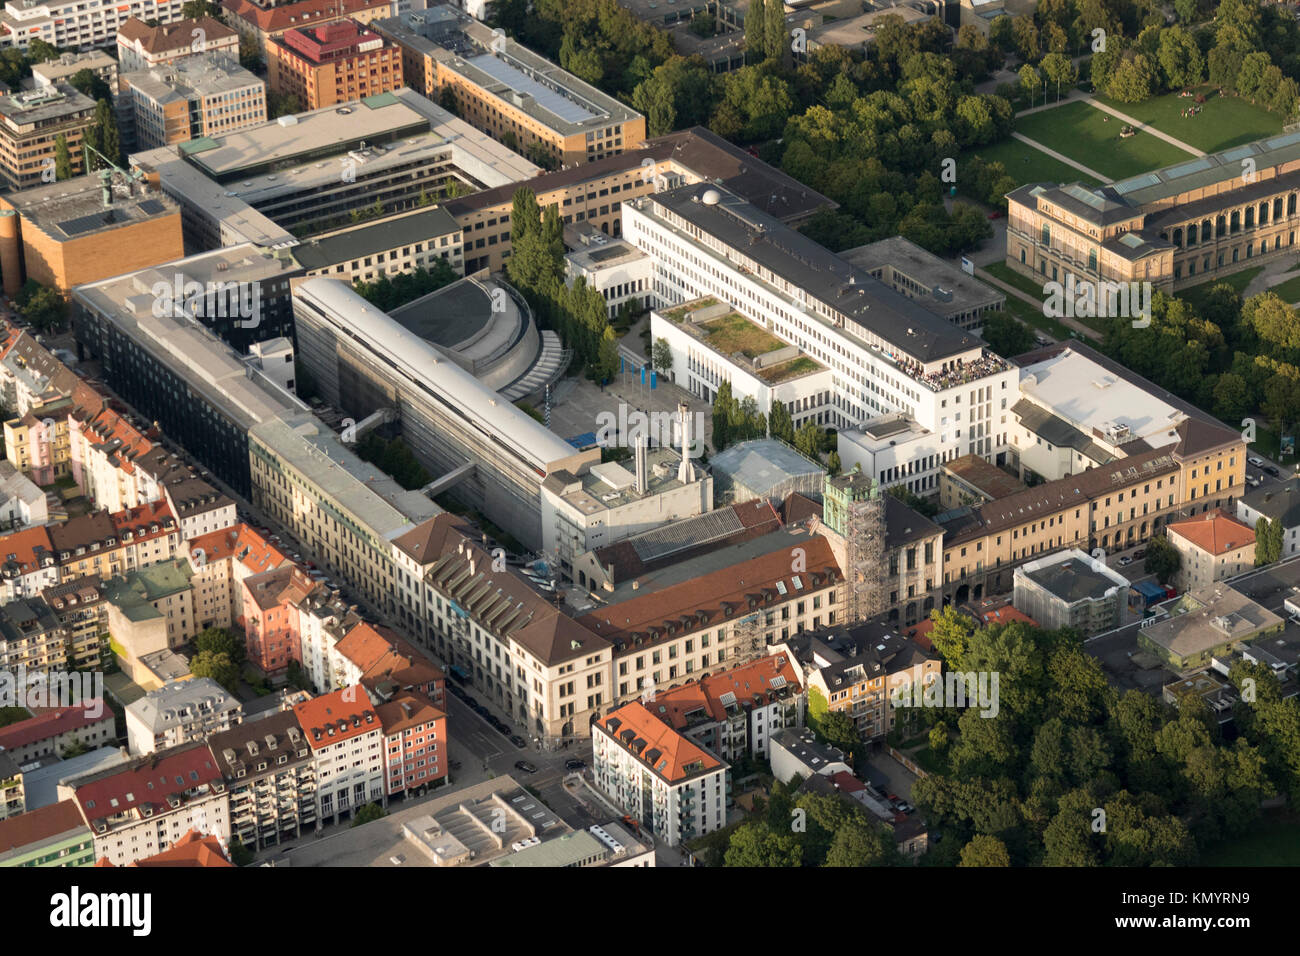 Luftbild des Campus der Technischen Universität München, der Technischen Universität München, Bayern, Deutschland Stockfoto